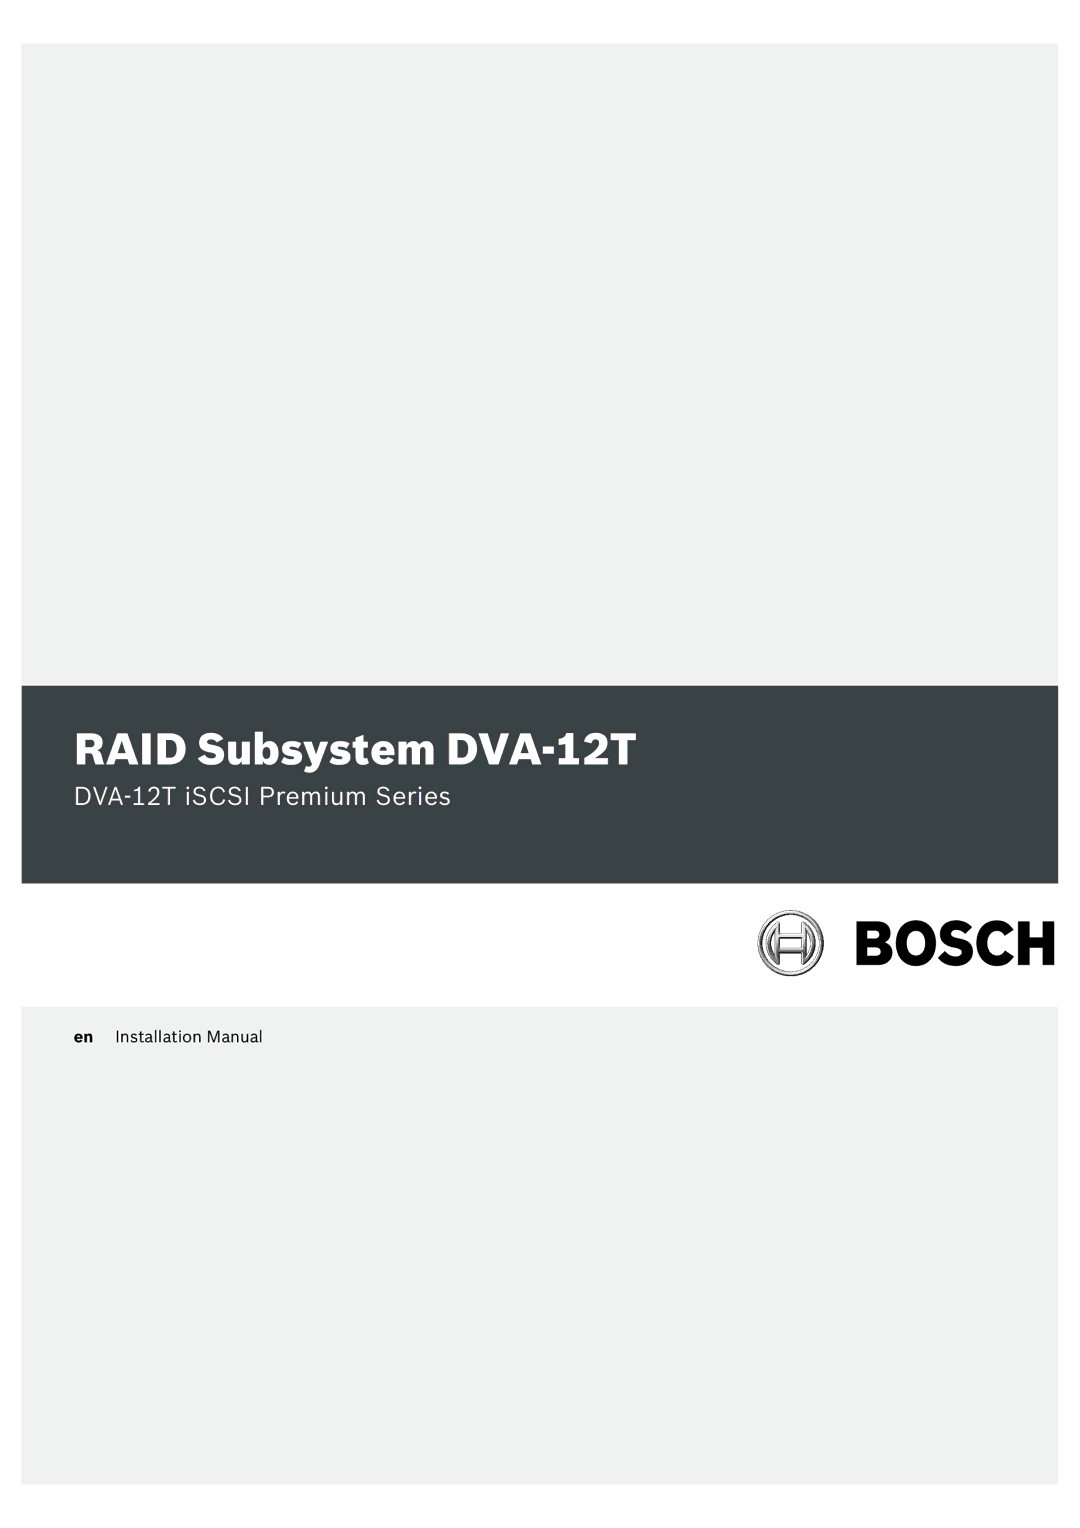 Bosch Appliances installation manual RAID Subsystem DVA-12T 